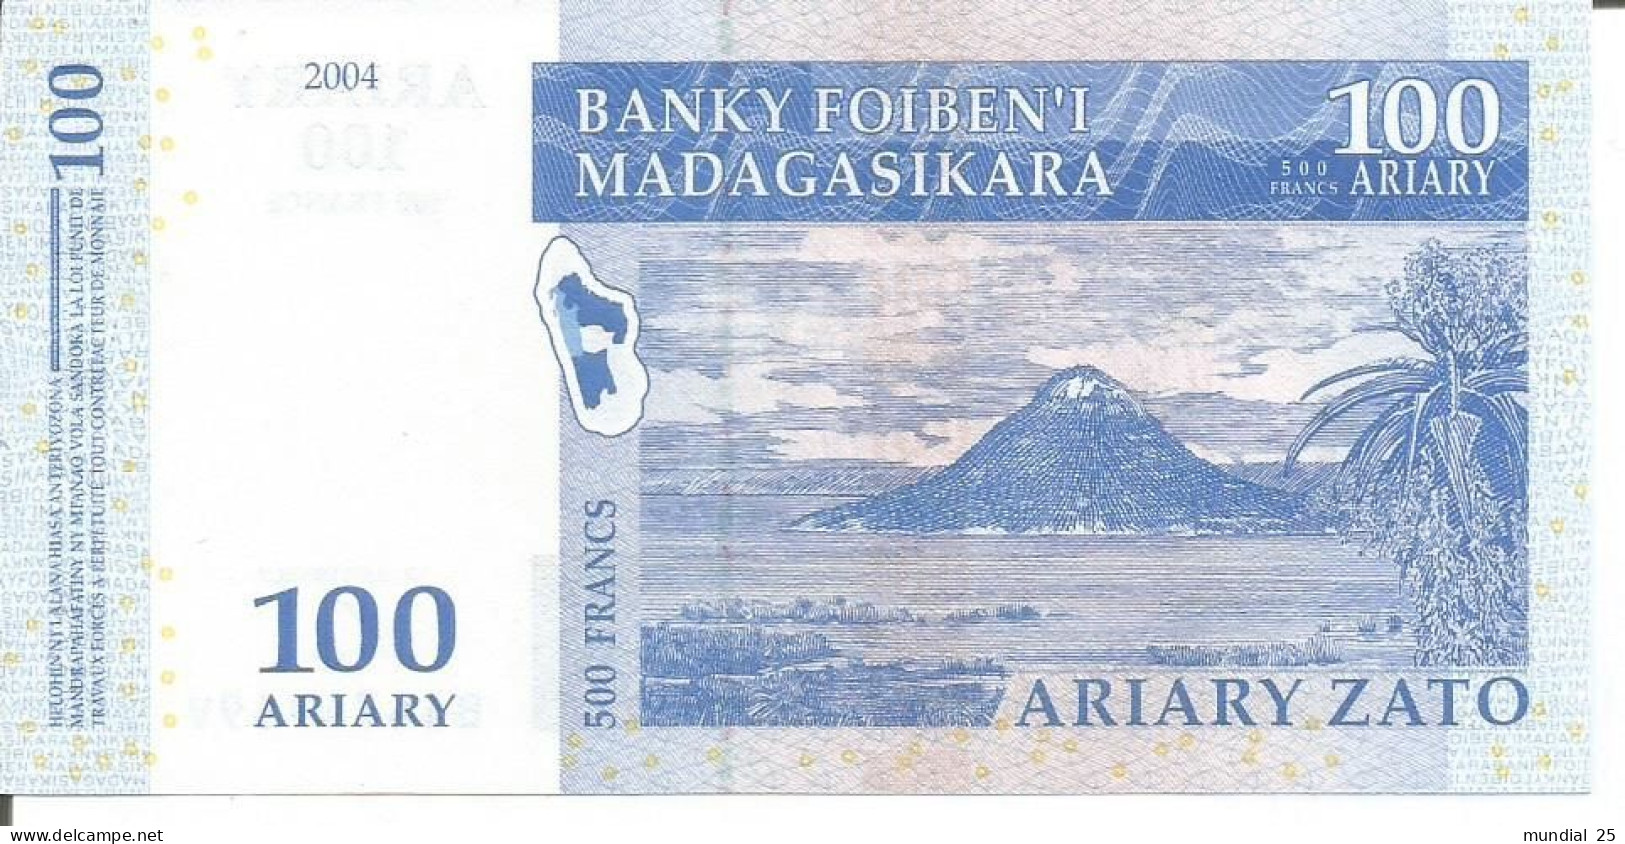 2 MADAGASCAR NOTES 100 ARIARY 2004 - Madagaskar